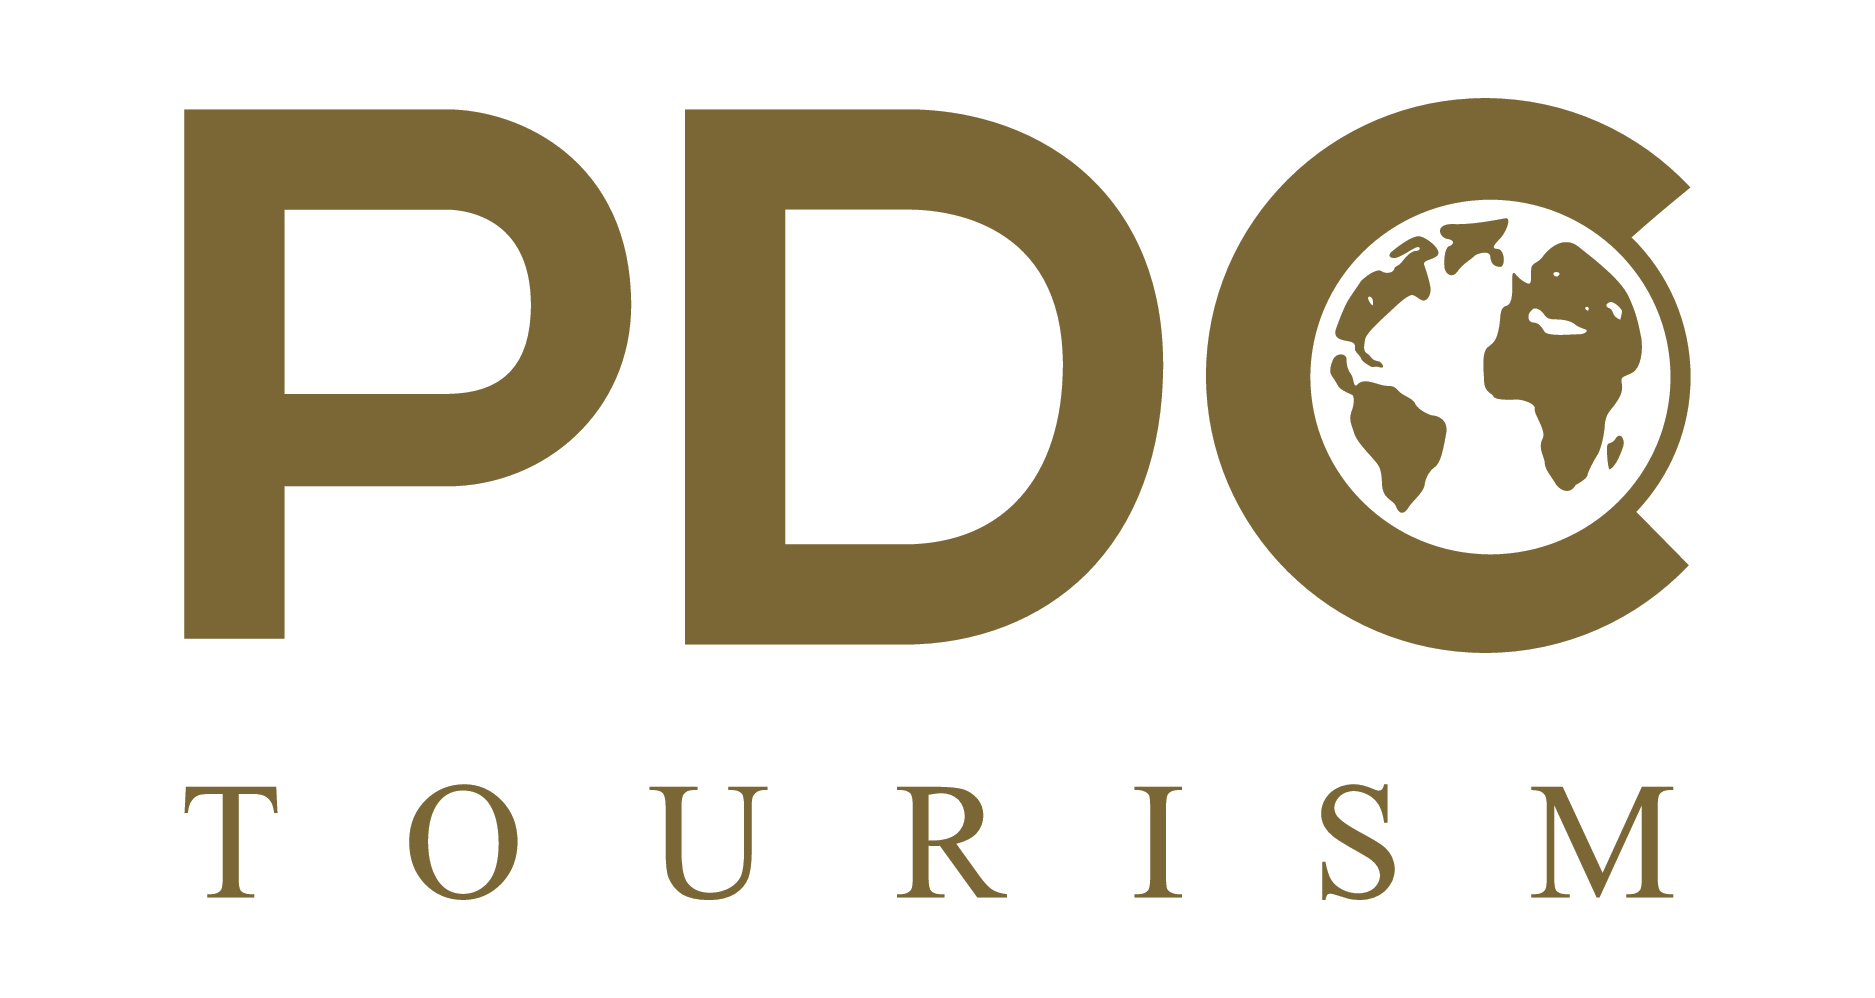 PDC Tourism, Reise buchen, Reiseveranstalter, Erlebnisreisen